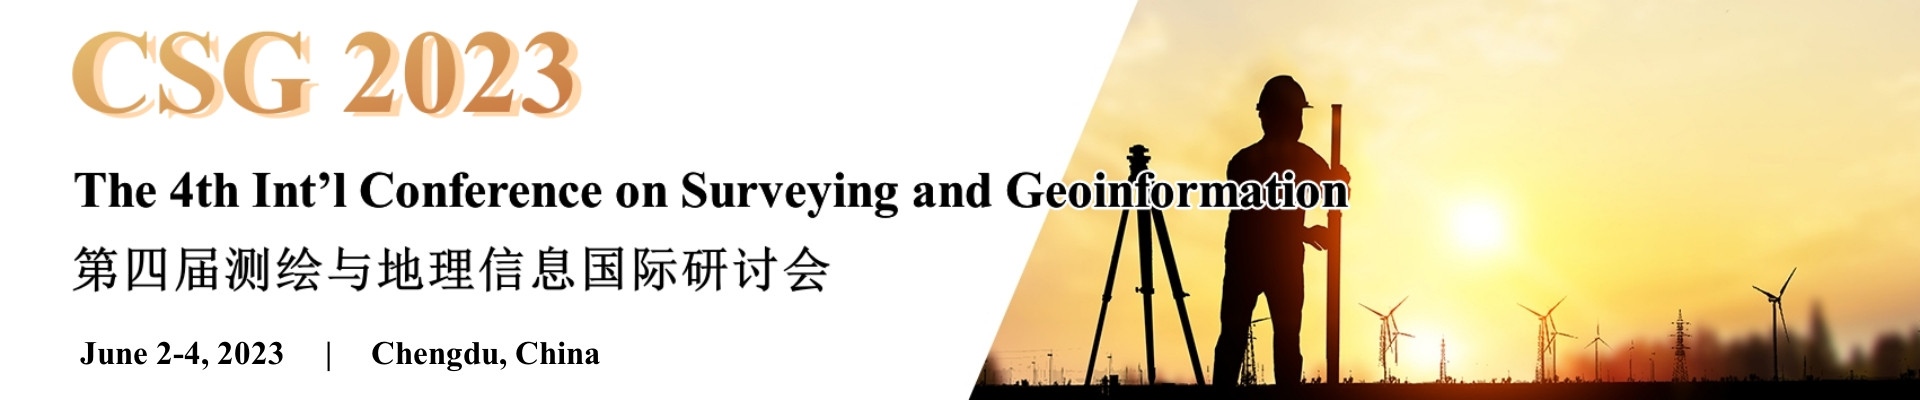 第四届测绘与地理信息国际研讨会(CSG 2023)